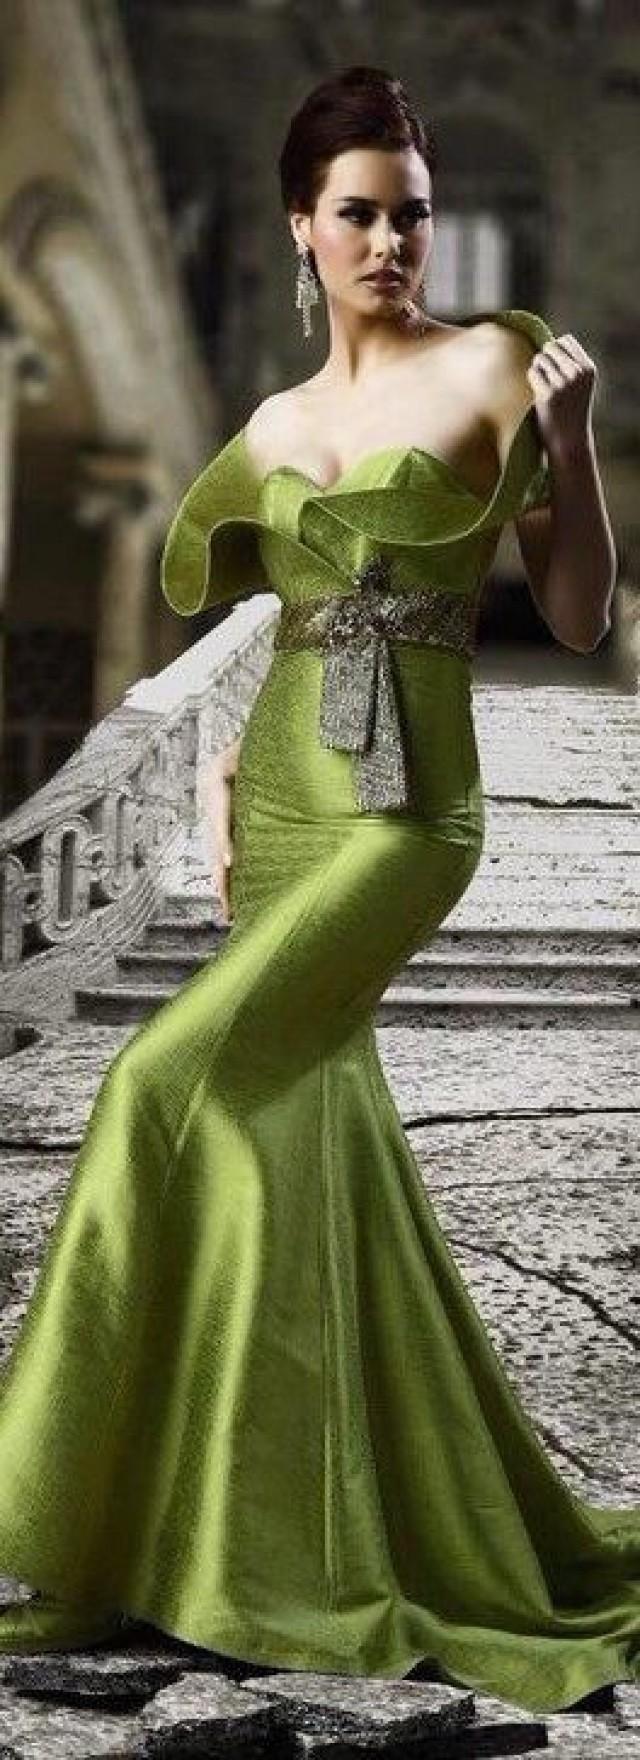 gr-ne-hochzeit-gowns-gorgeous-greens-2181117-weddbook